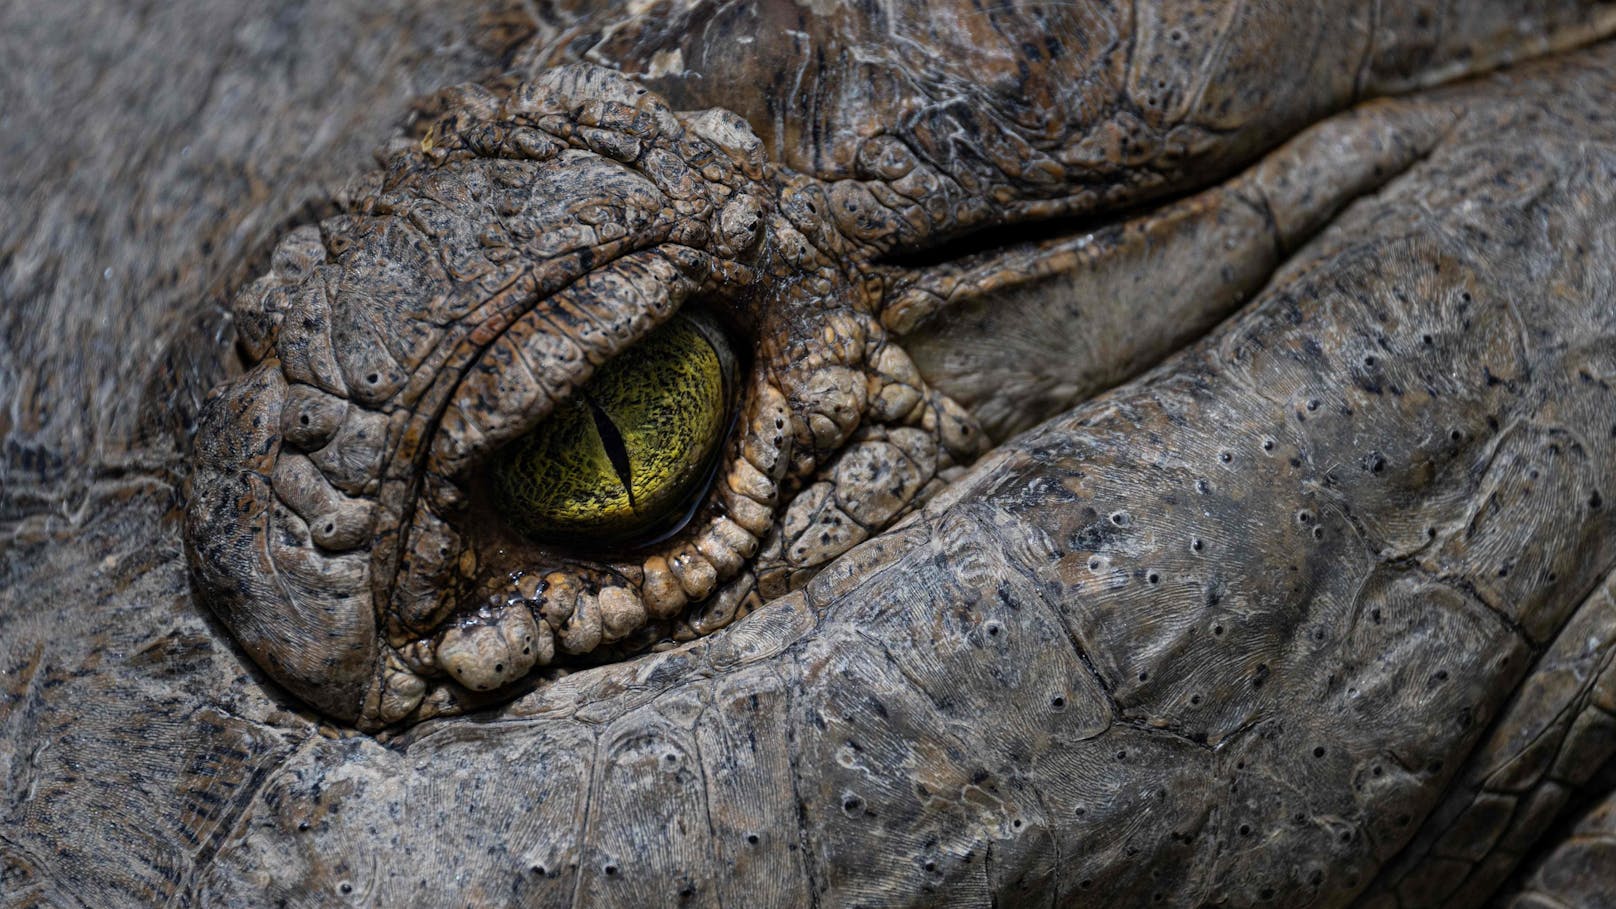 Die Angehörigen mussten kürzlich den Mageninhalt eines Krokodils identifizieren. Es soll einen 60-Jährigen gefressen haben.